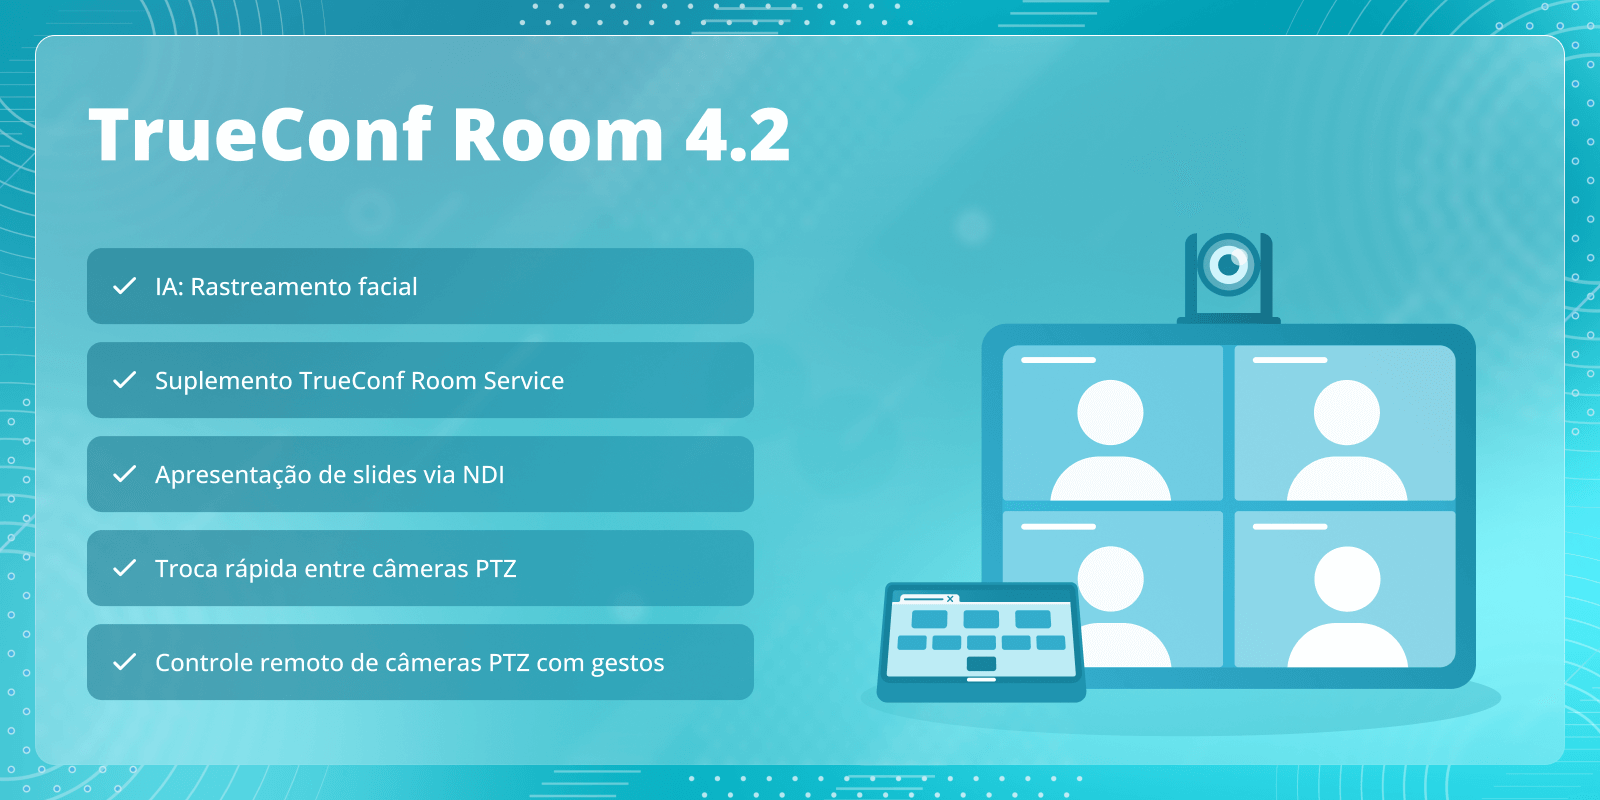 TrueConf Room 4.2: suplemento TrueConf Room Service e rastreamento facial 5